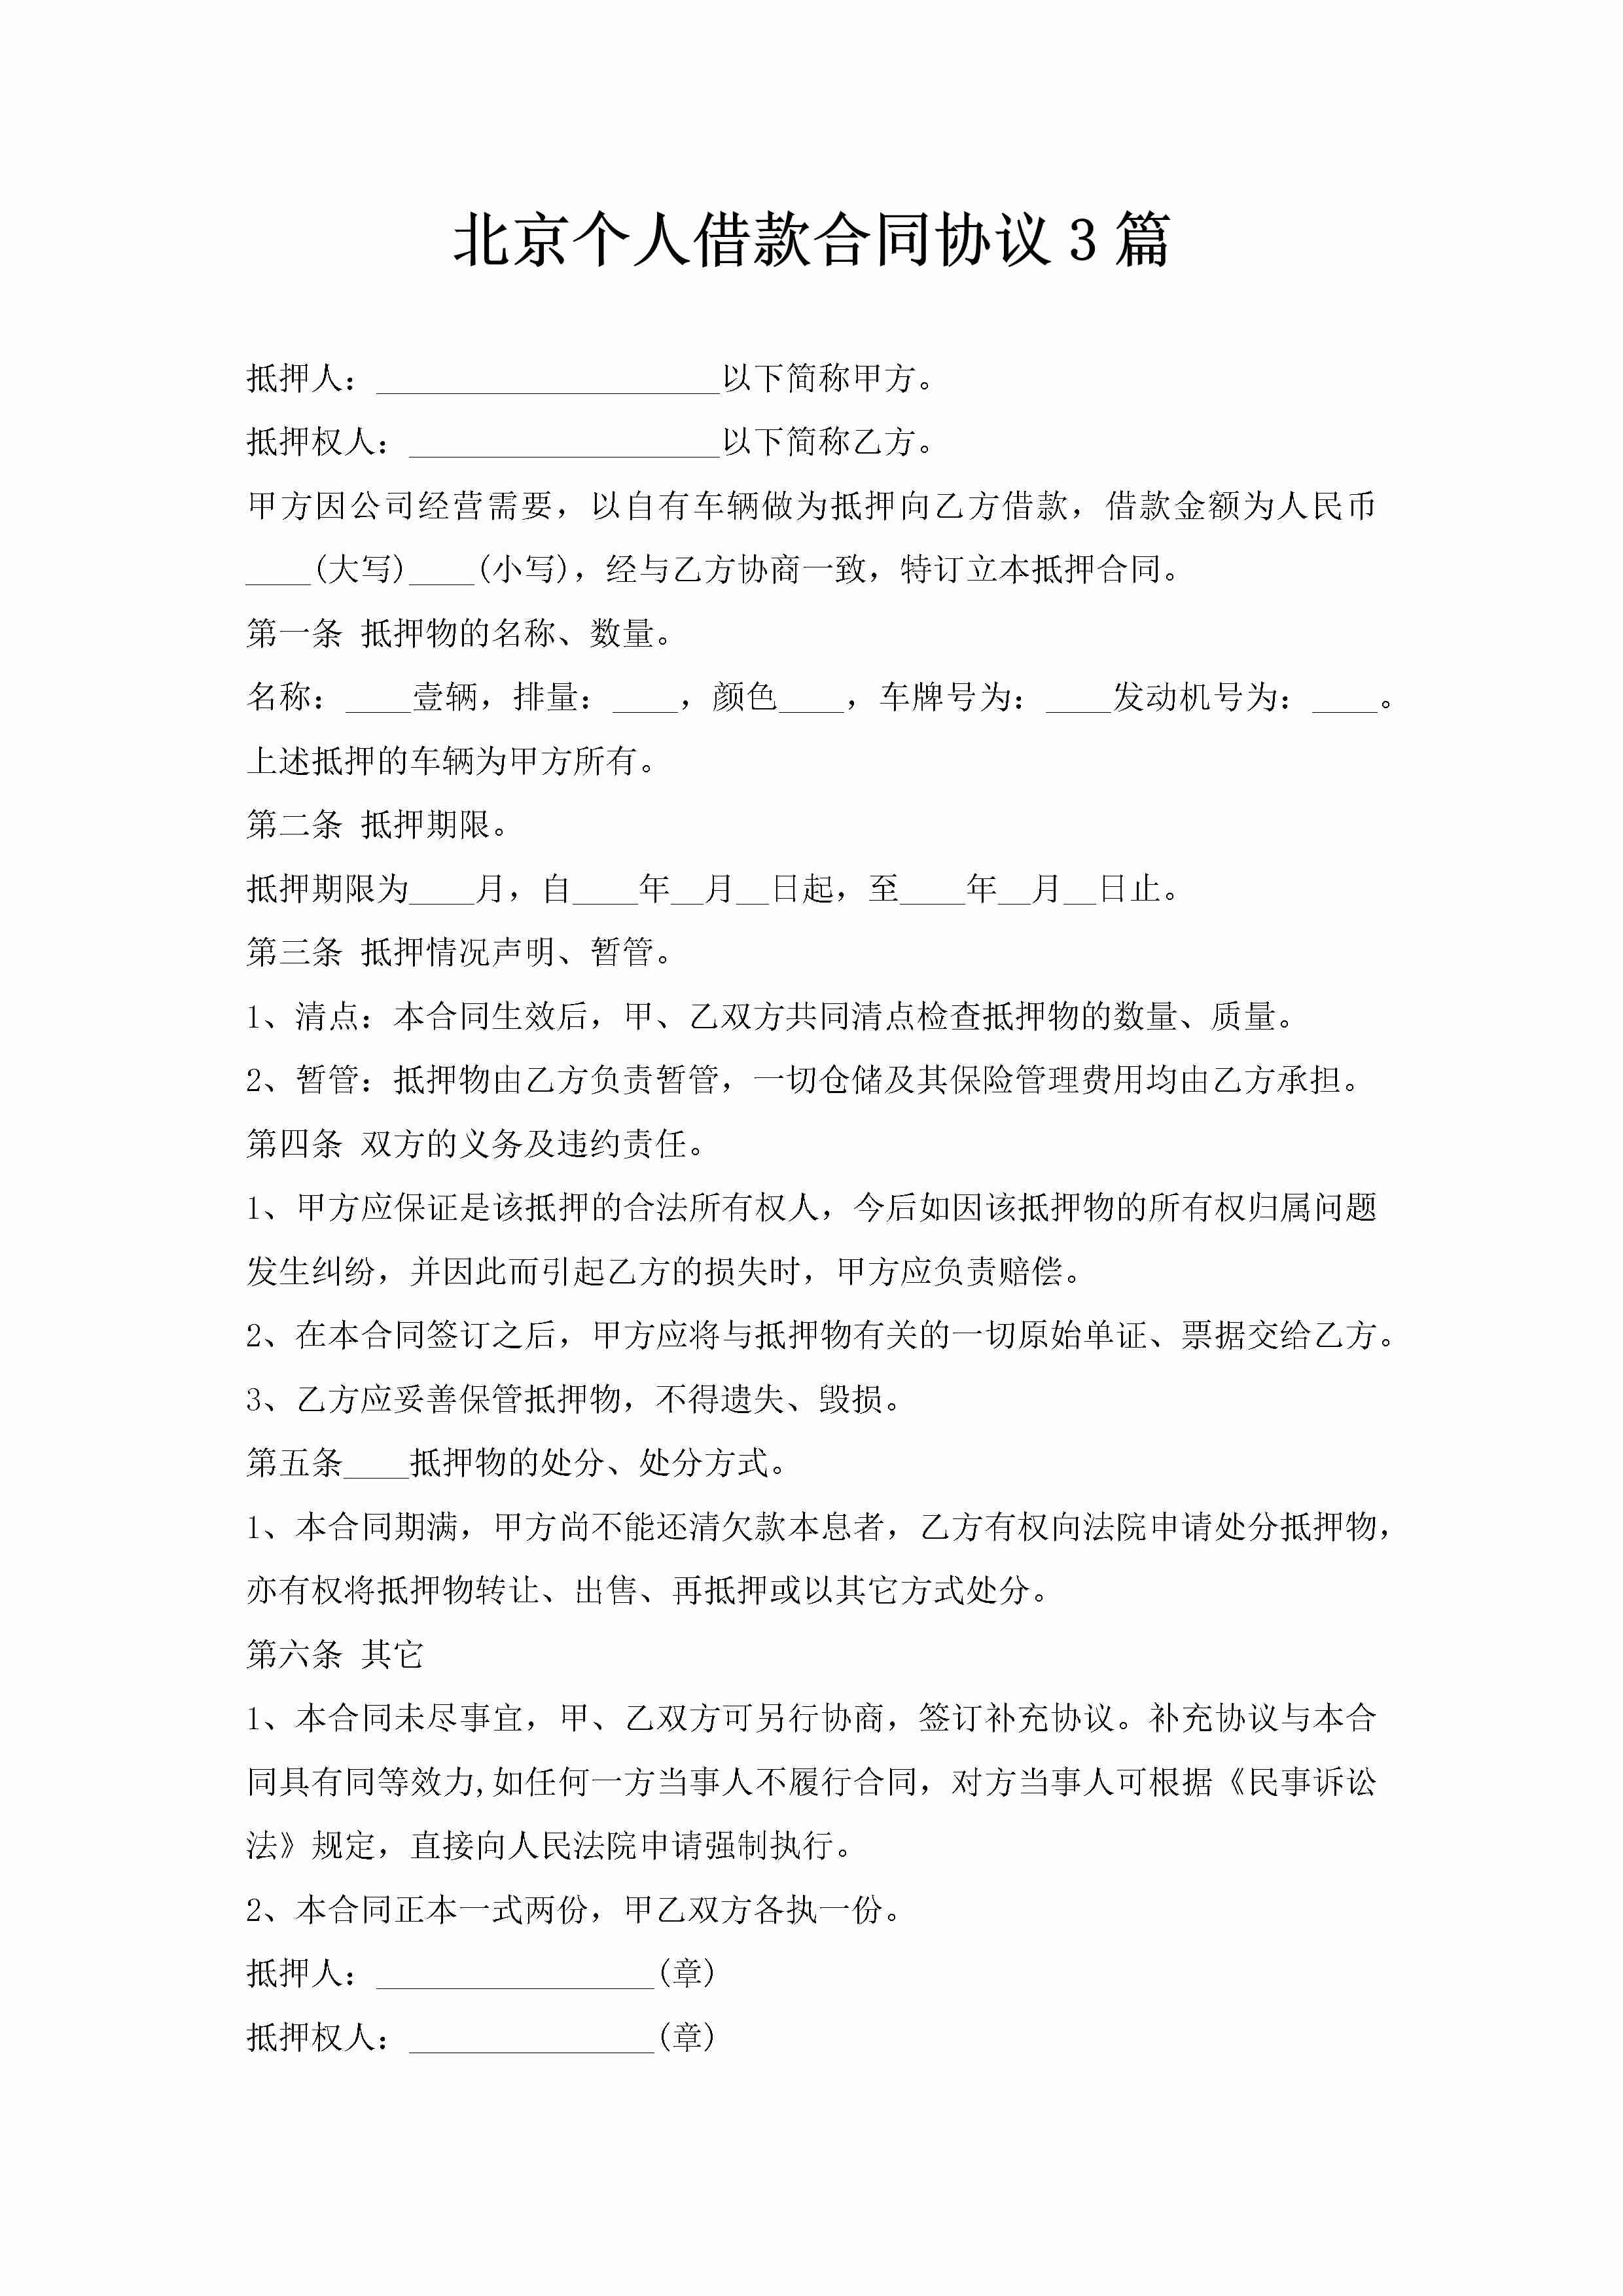 北京个人借款合同协议3篇-聚给网